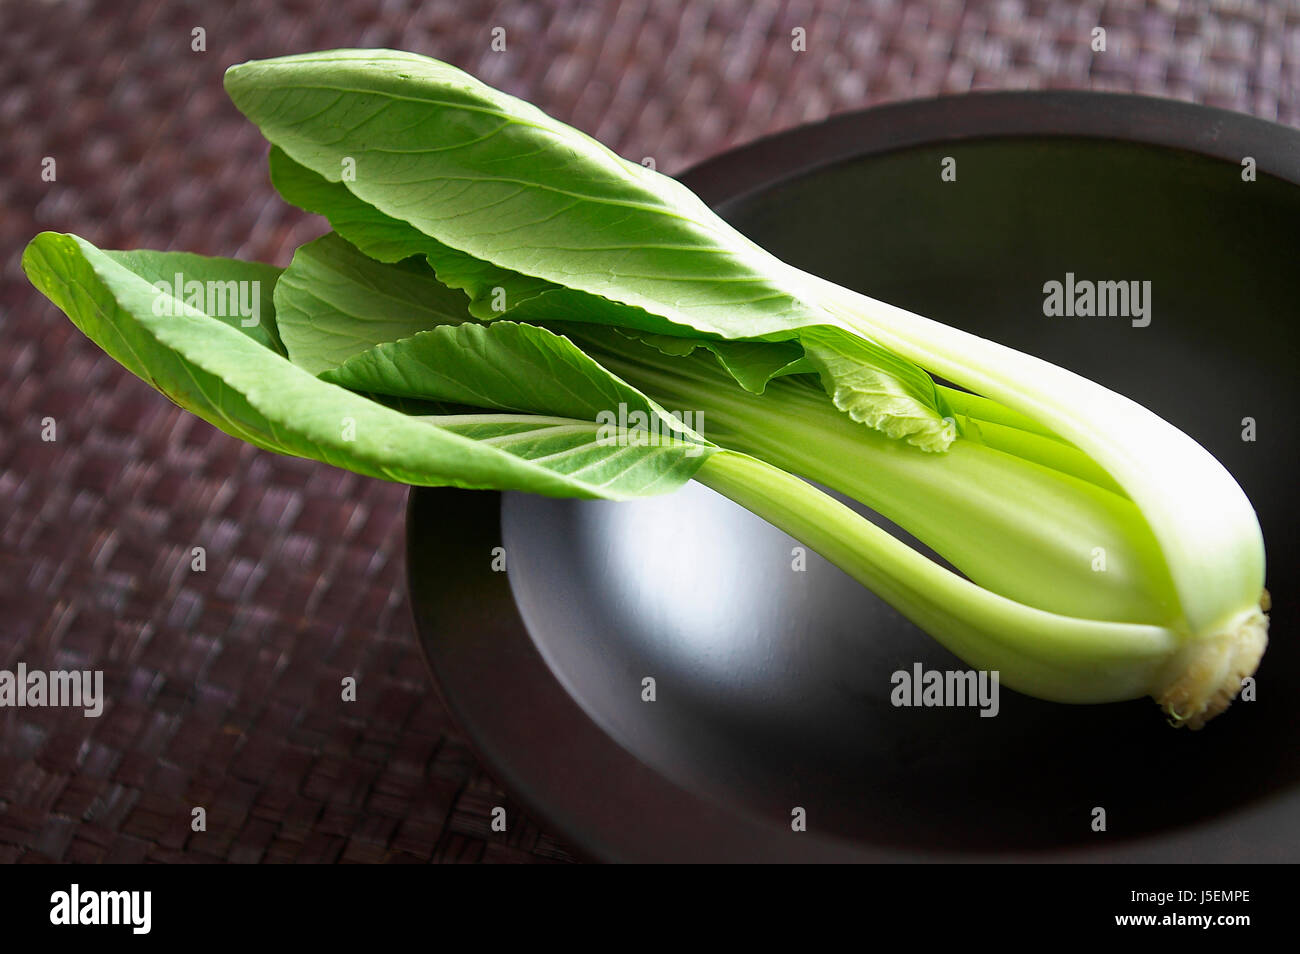 Chinesische Blatt, Pe-Tsai Brassica Pekinensis, Studioaufnahme des grün gefärbten Vegatable in Schüssel geben. Stockfoto